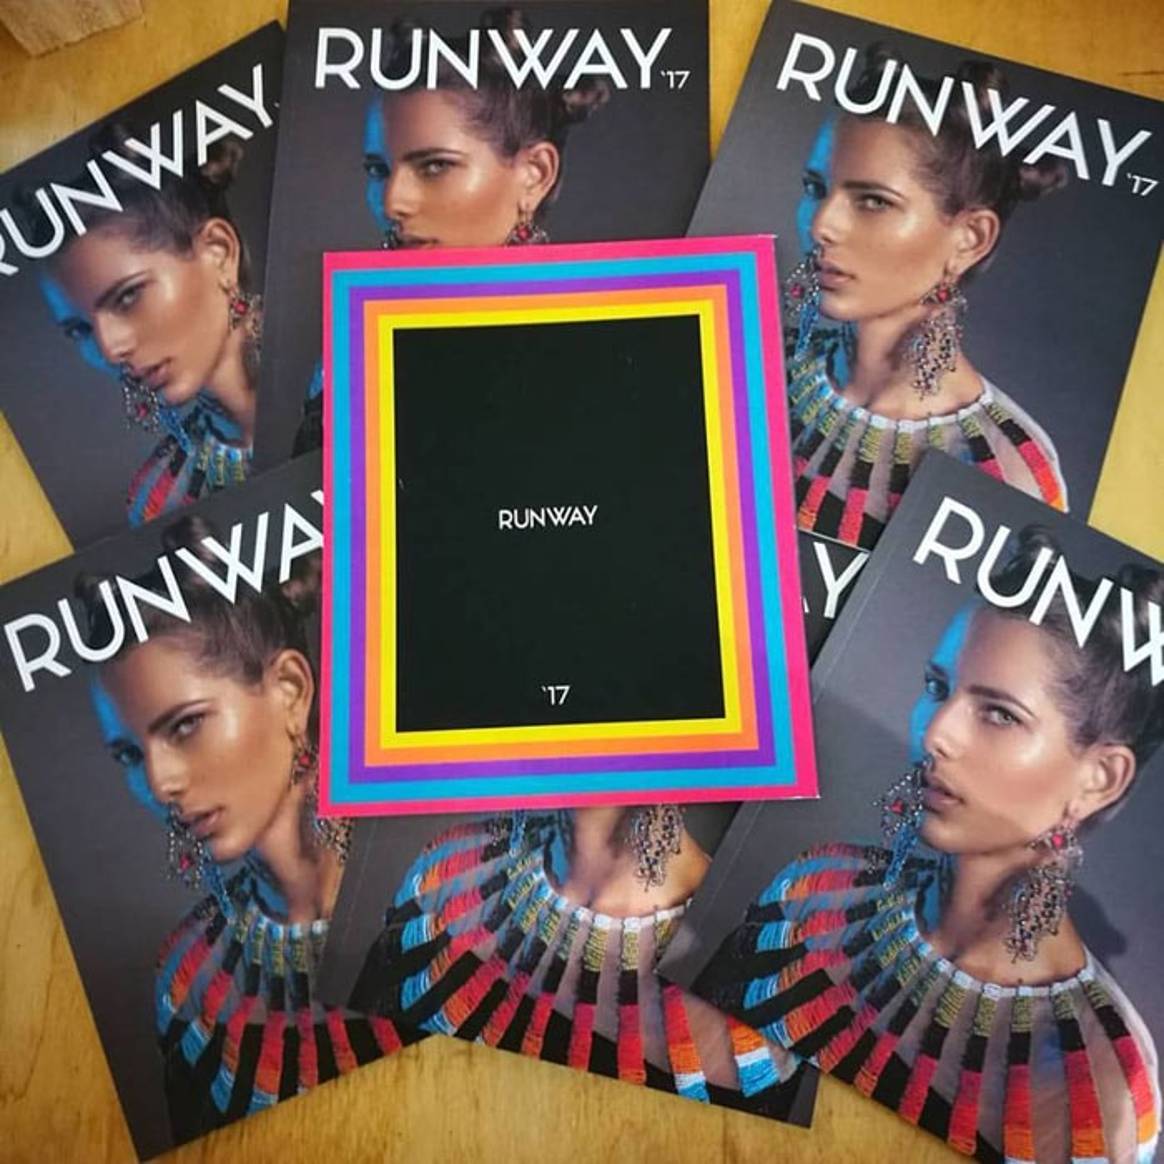 Ecuador volvió a vestirse de moda en una nueva edición de “Runway”